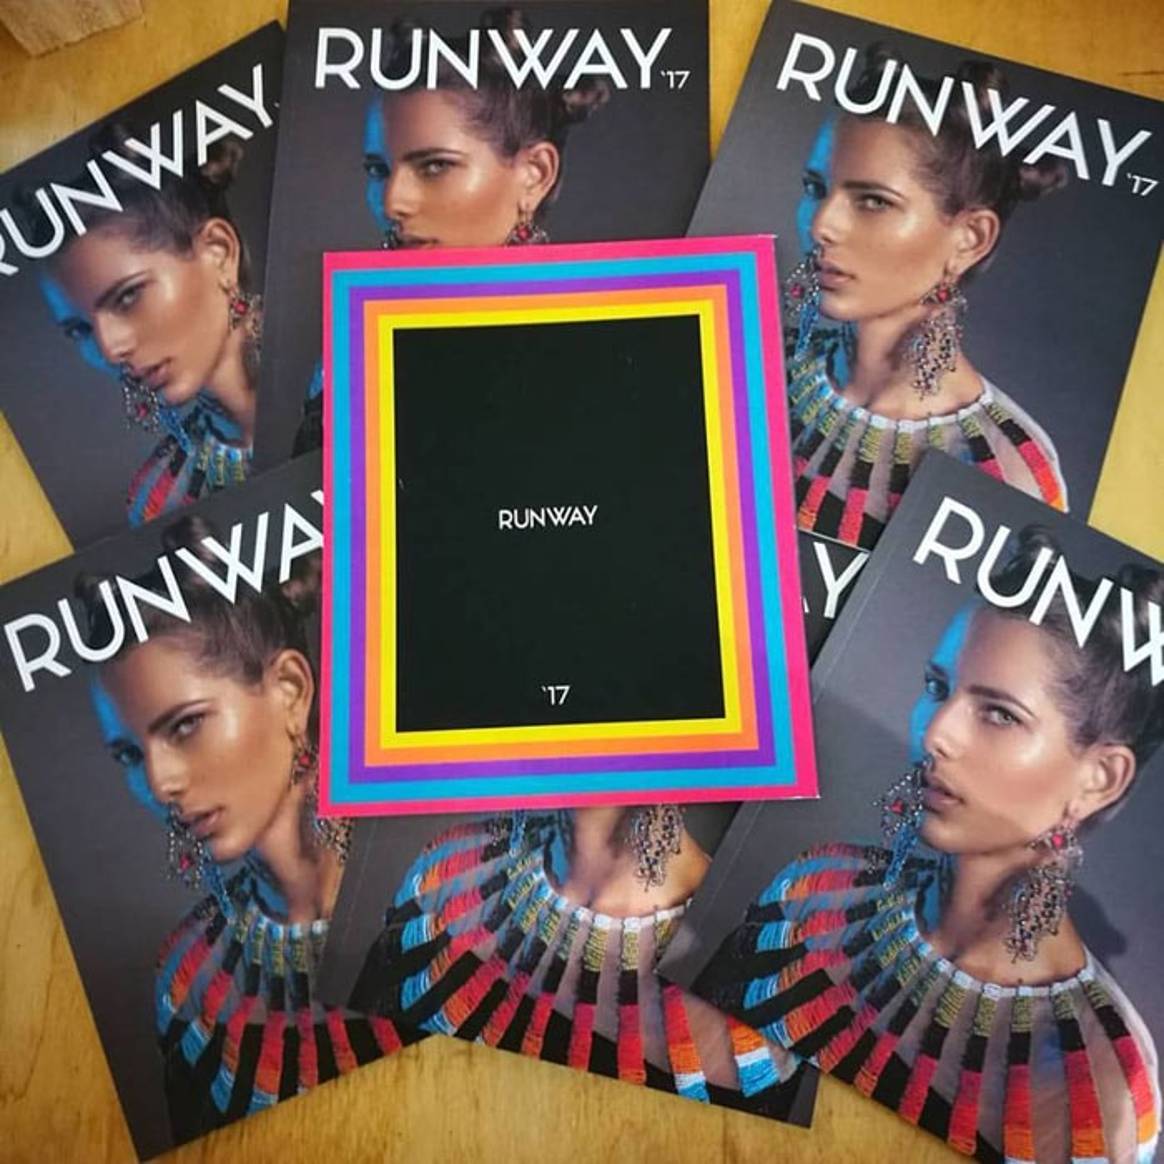 Ecuador volvió a vestirse de moda en una nueva edición de “Runway”